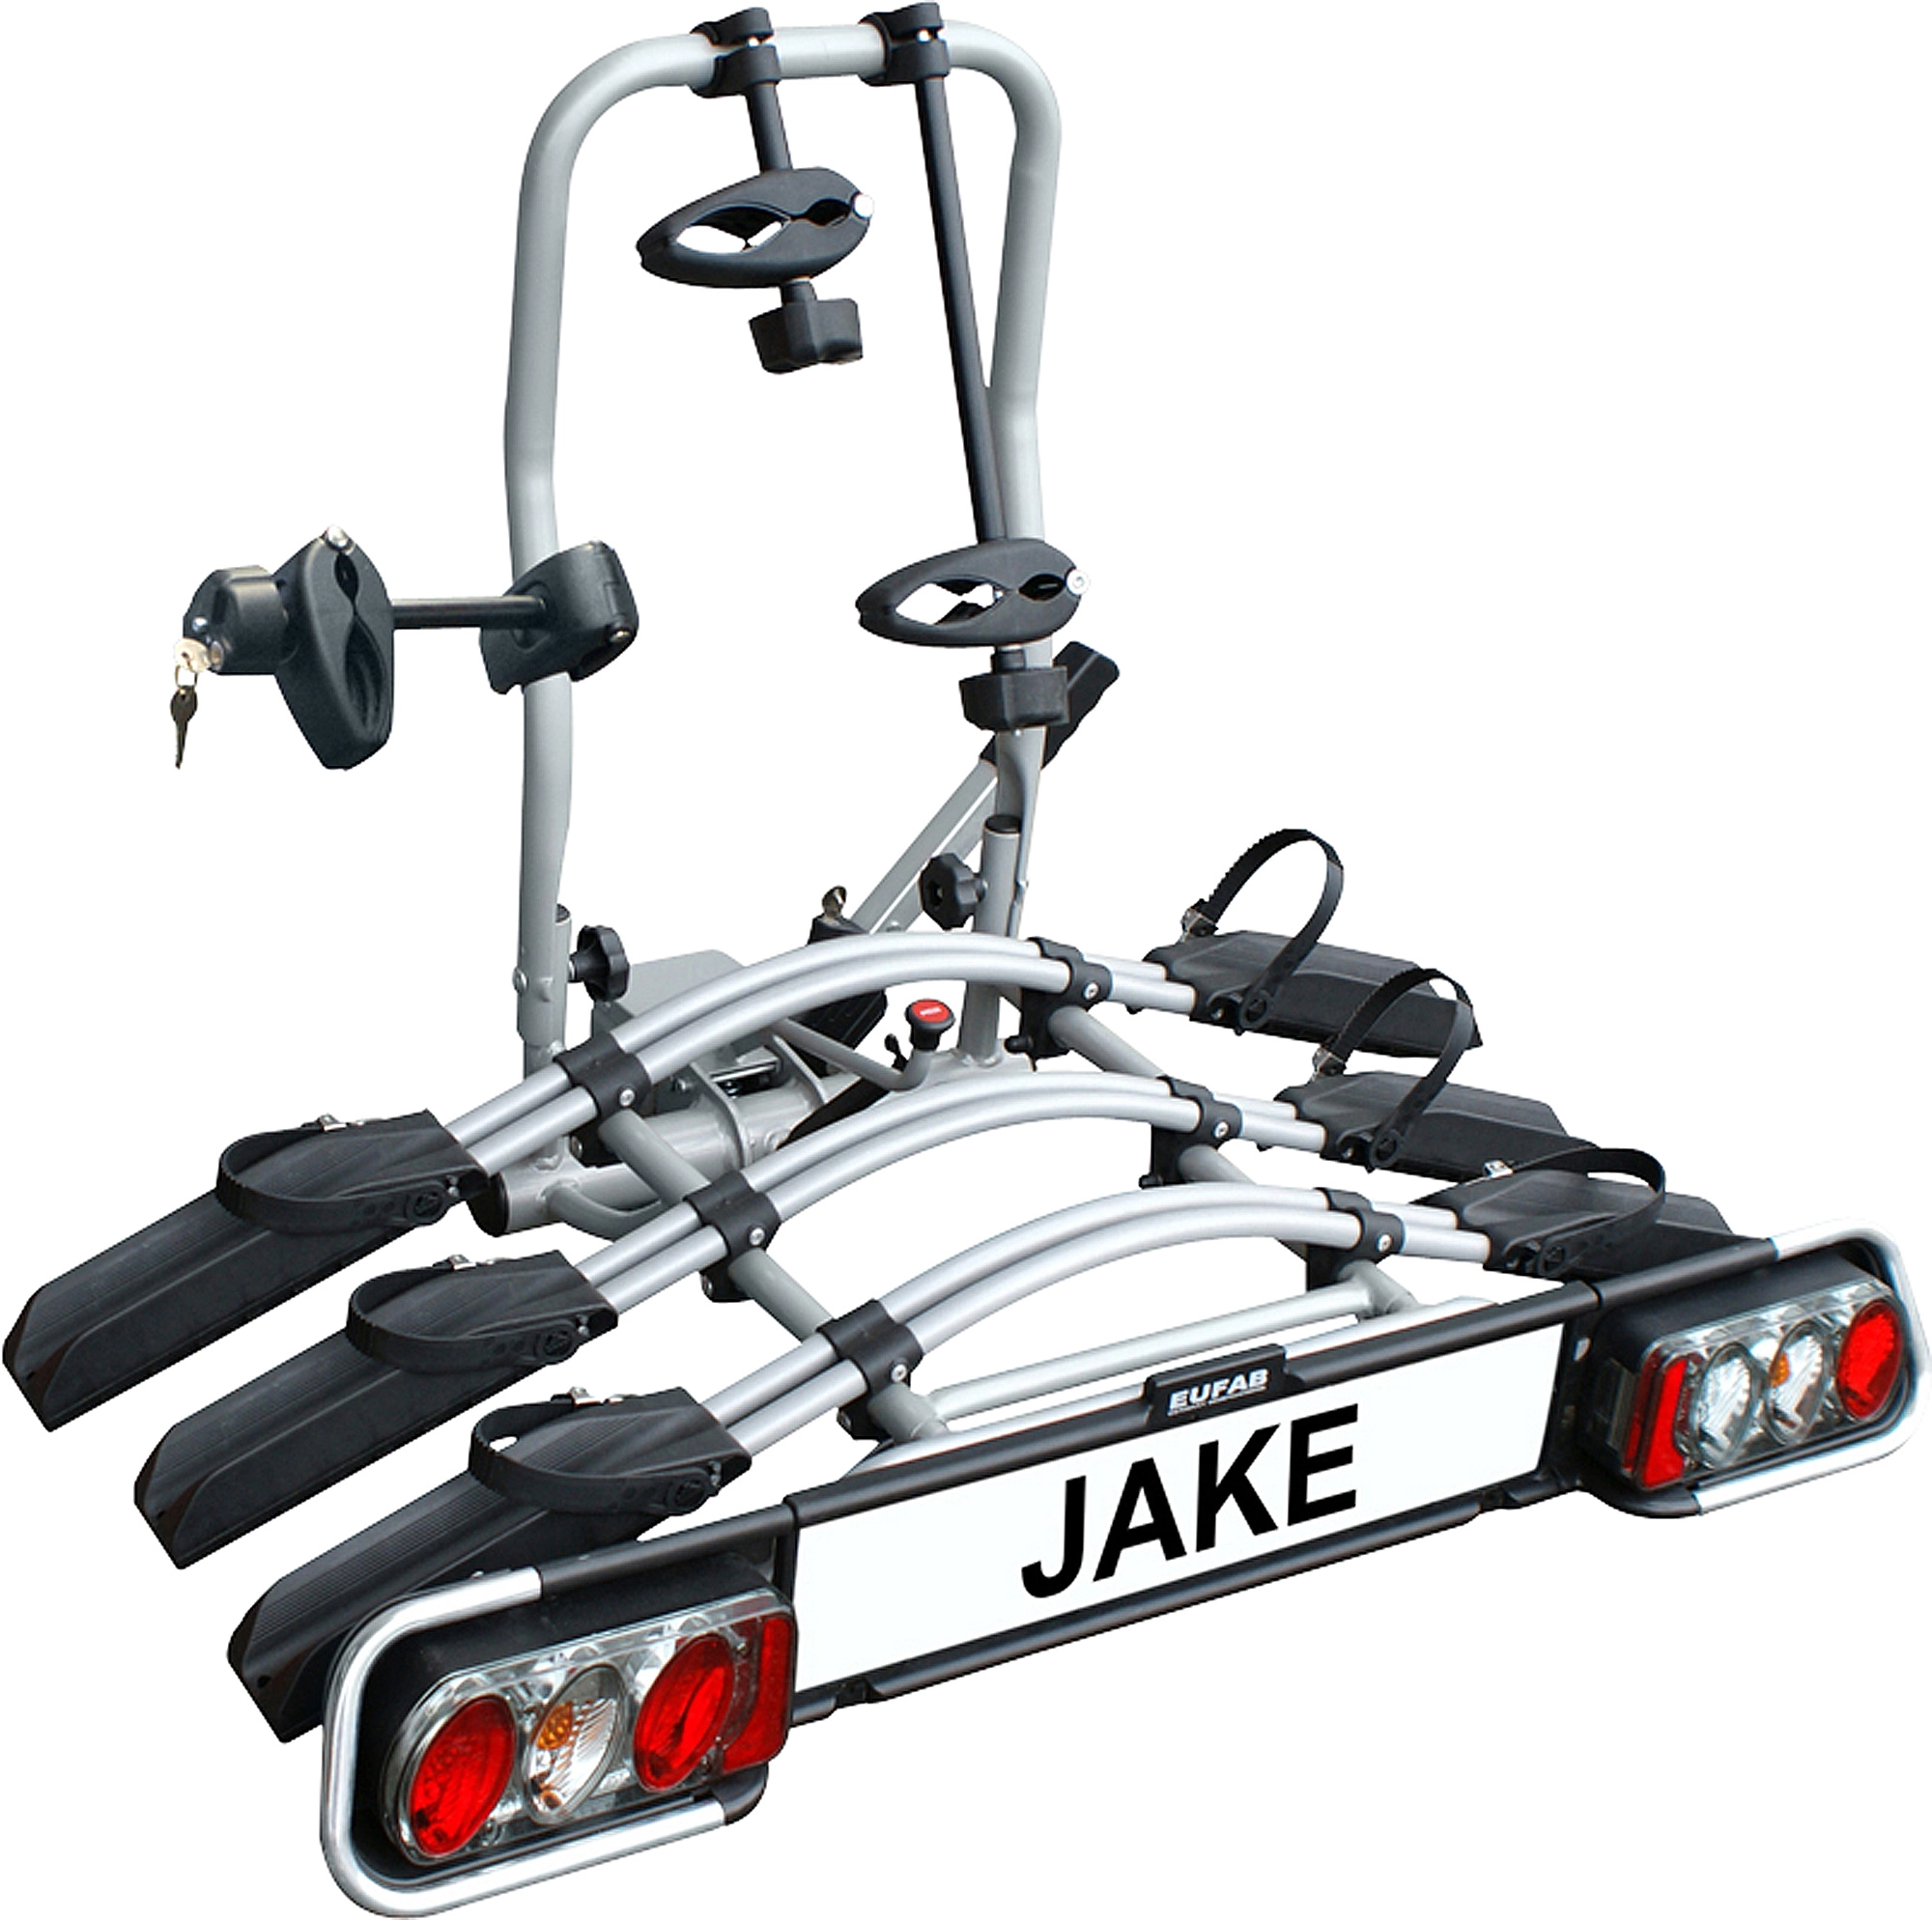 Eufab Fahrradträger-Erweiterung Jake für 3. Fahrrad kaufen bei OBI